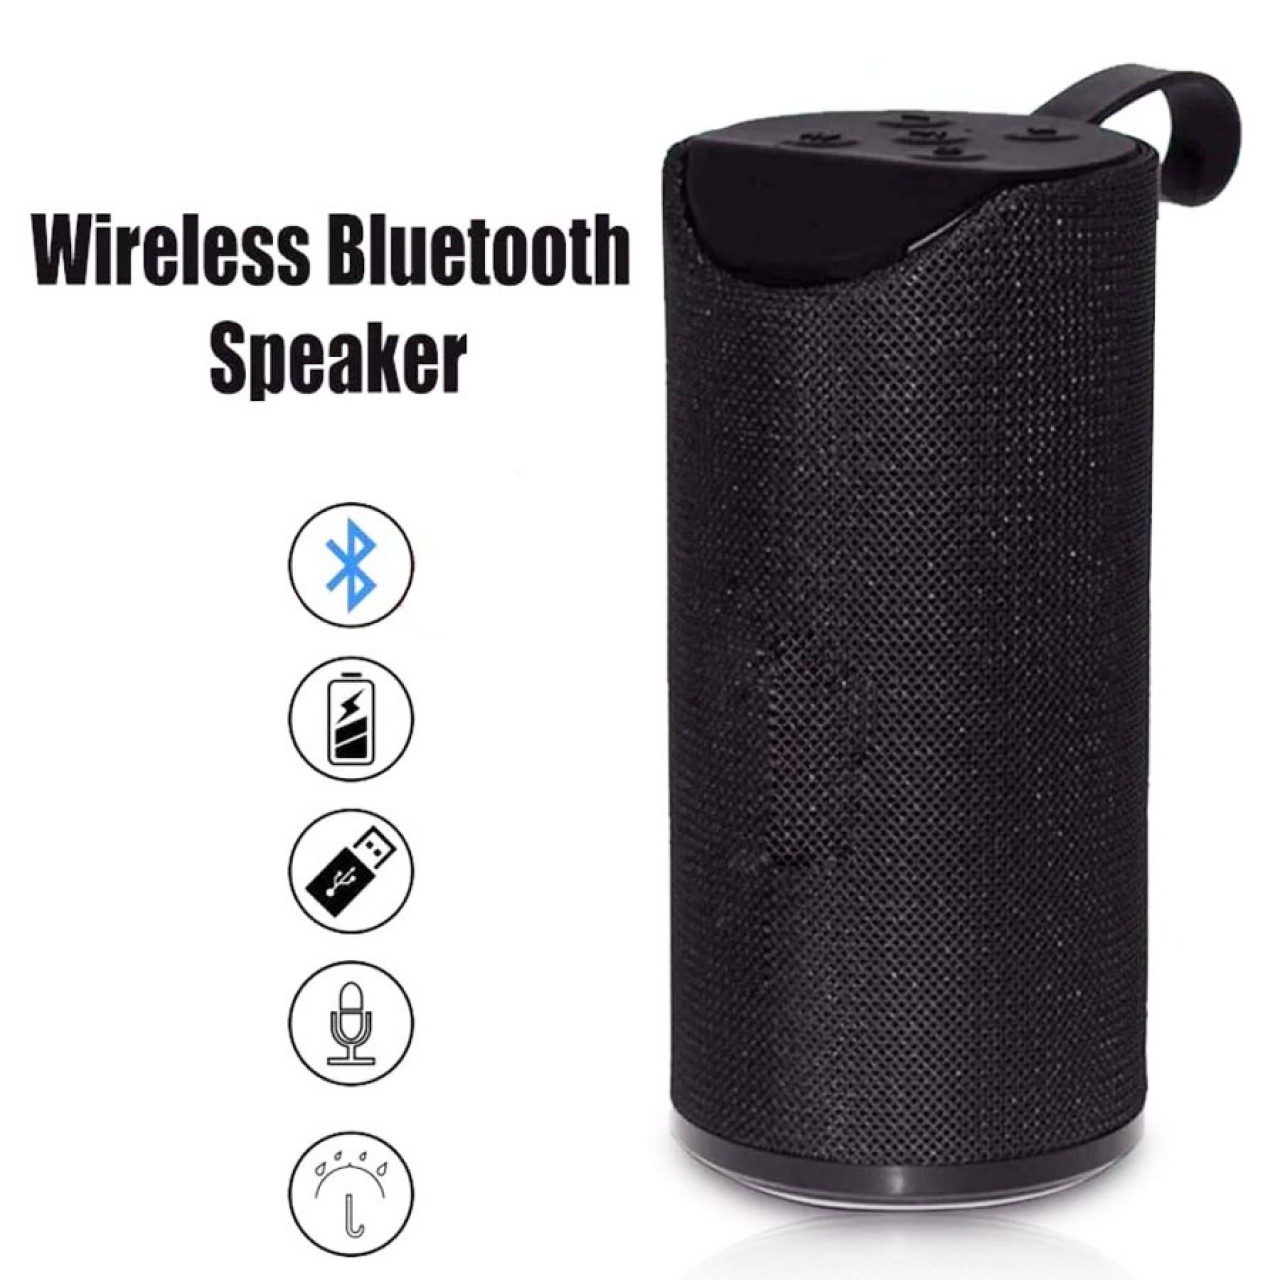 Ασύρματο Φορητό Ηχείο - Wireless Portable Bluetooth Speaker Black